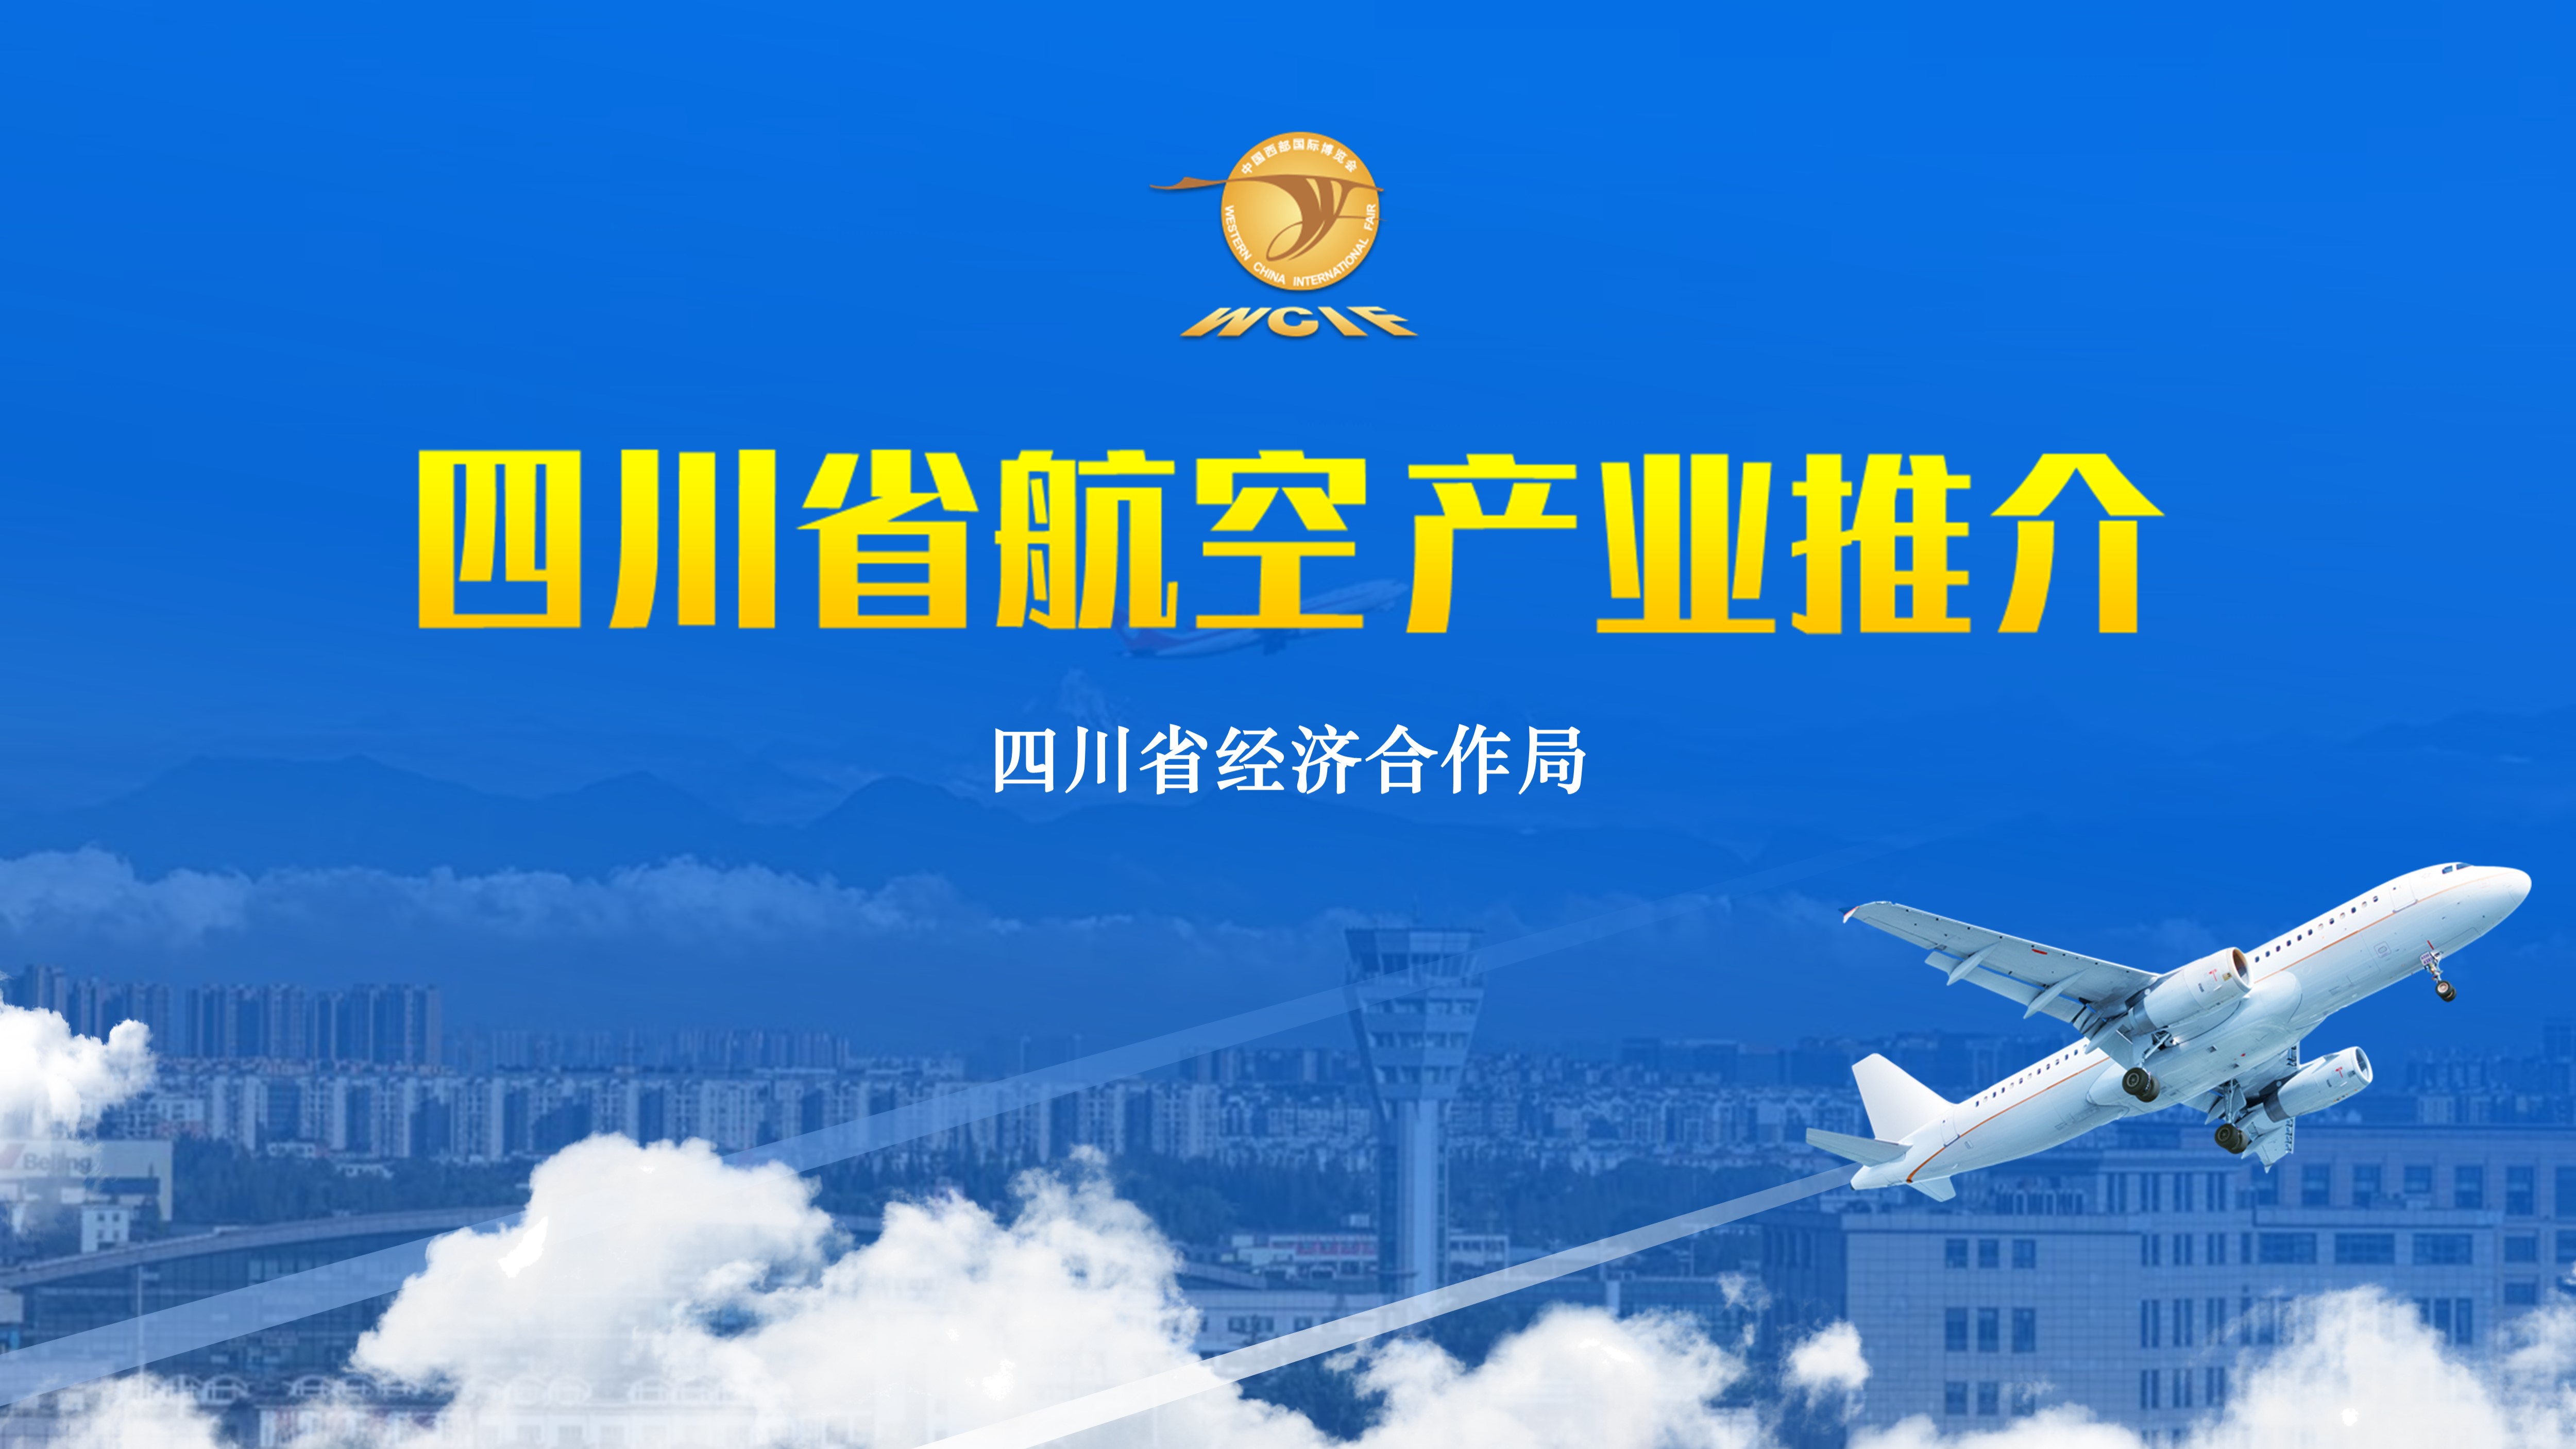 四川省航空产业推介PPT设计制作